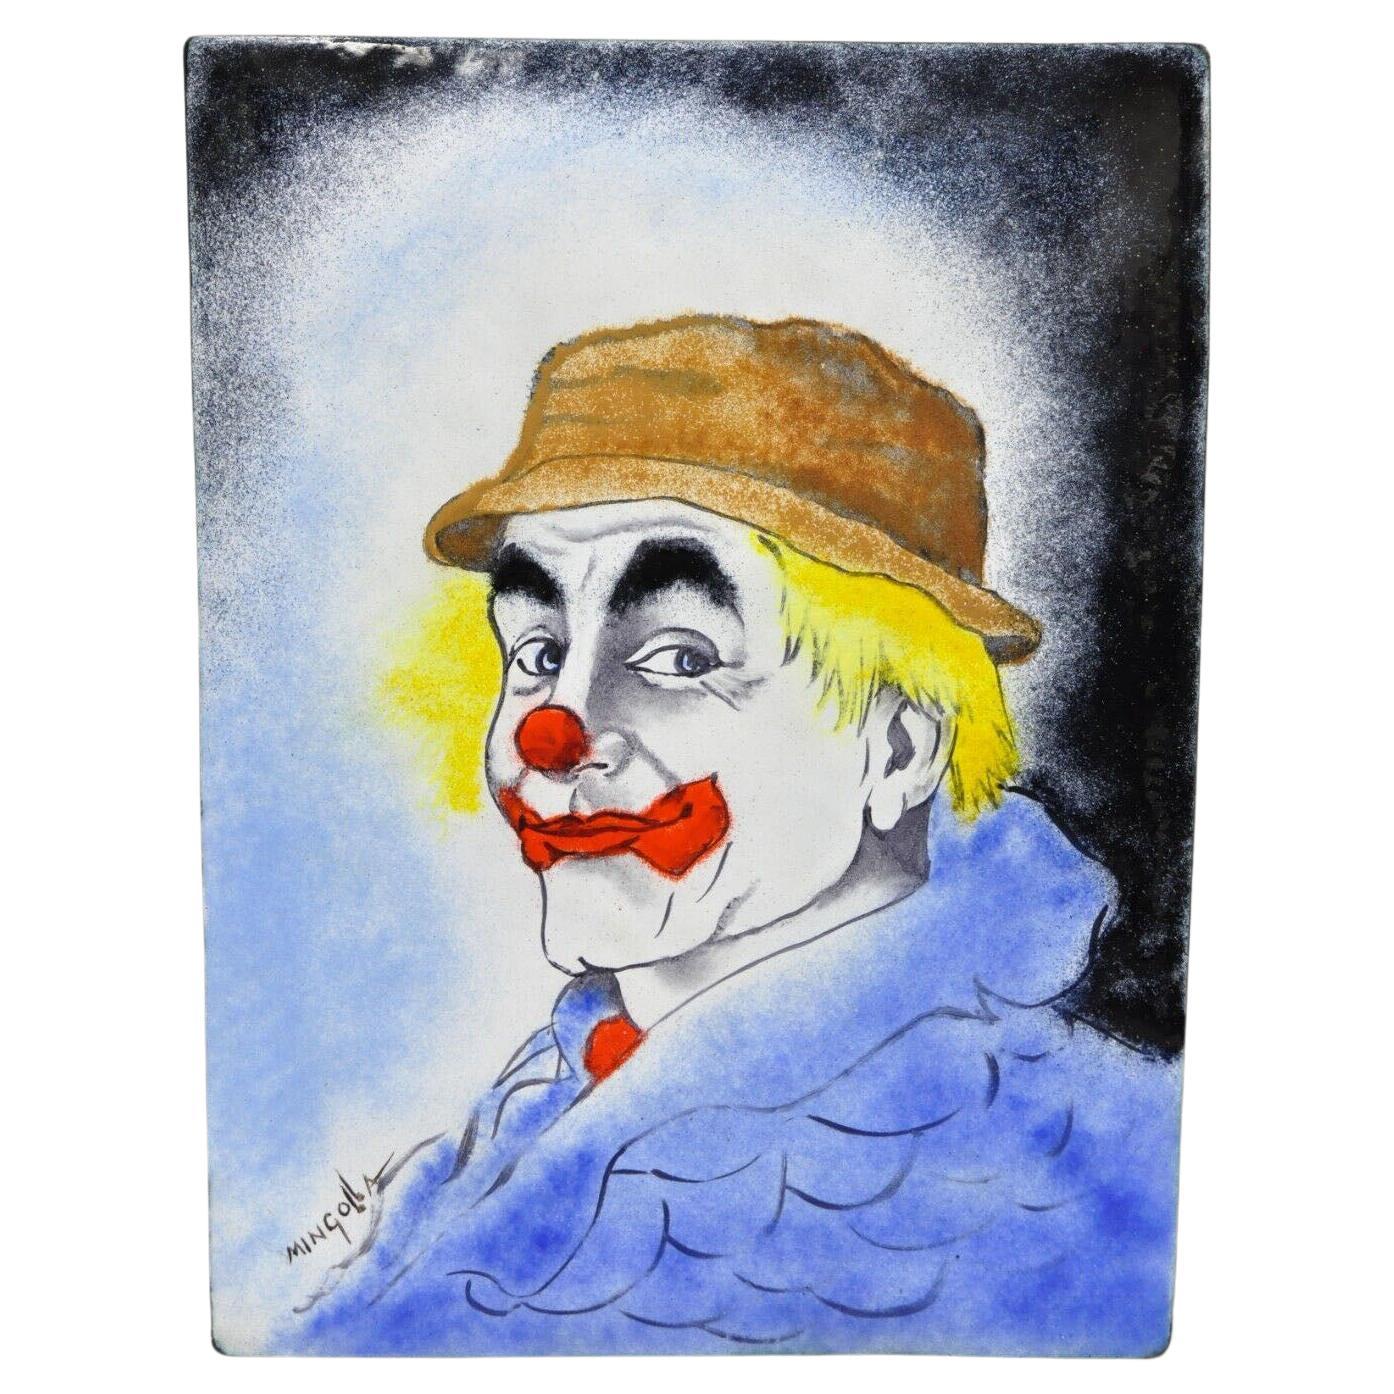 Dom Dominic Mingolla, portrait de clown avec chapeau, peinture émaillée sur cuivre, 12 x 9